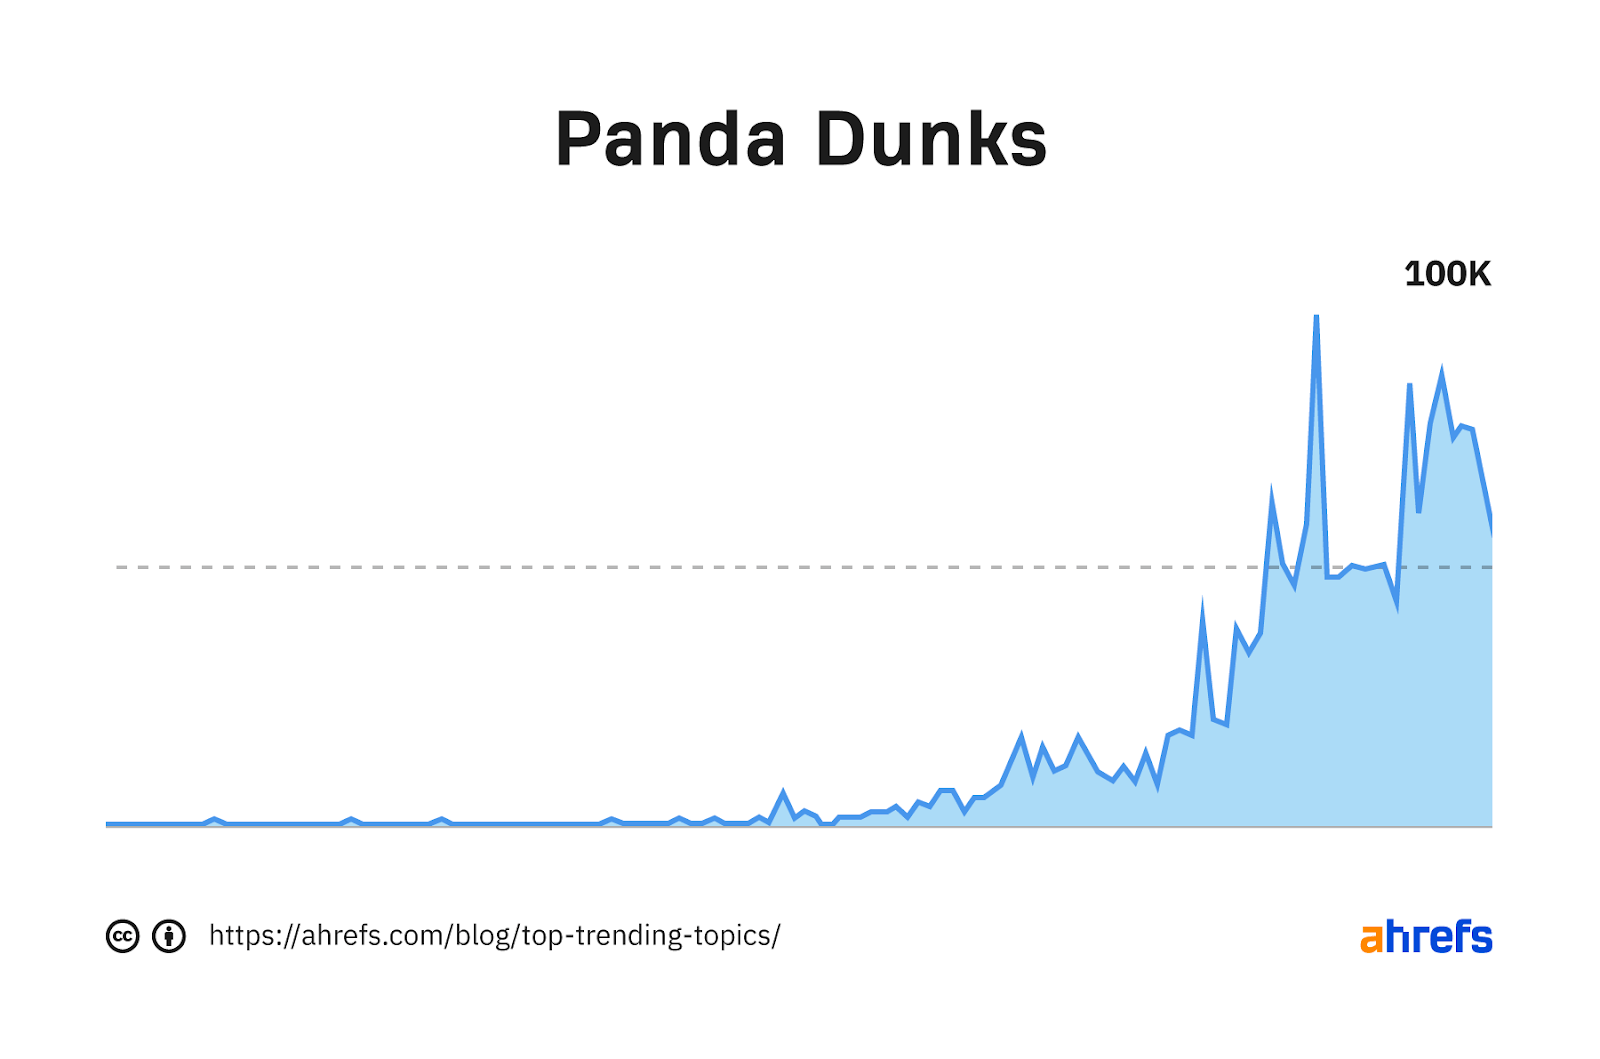 نمودار روند برای کلمه کلیدی "دانک های پاندا"